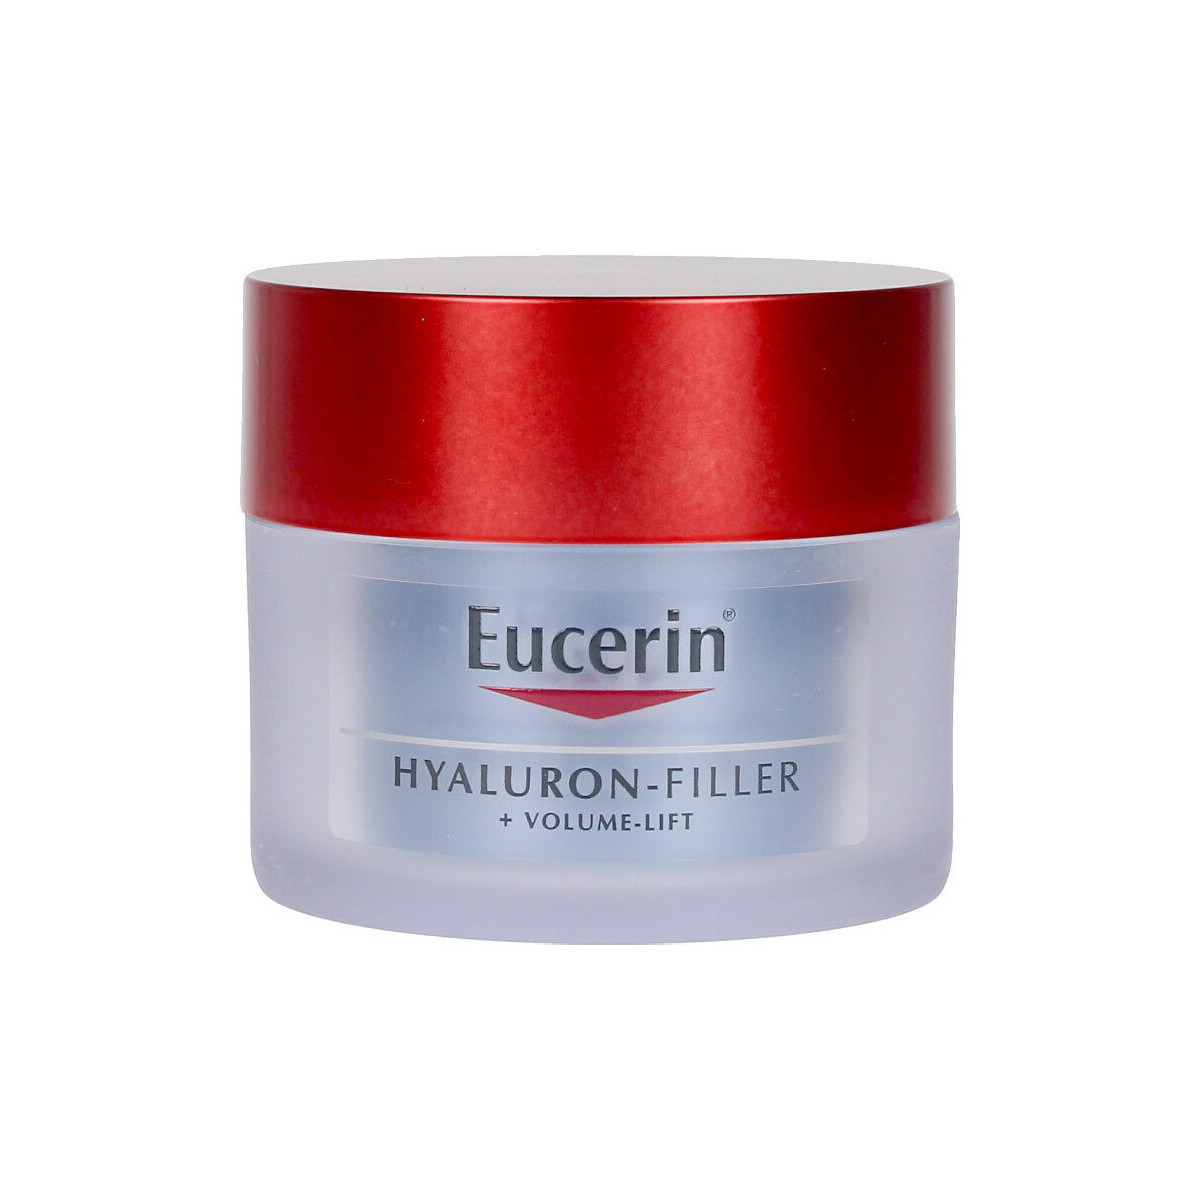 Bellezza Antietà & Antirughe Eucerin Hyaluron-filler +volume-lift Crema Noche 